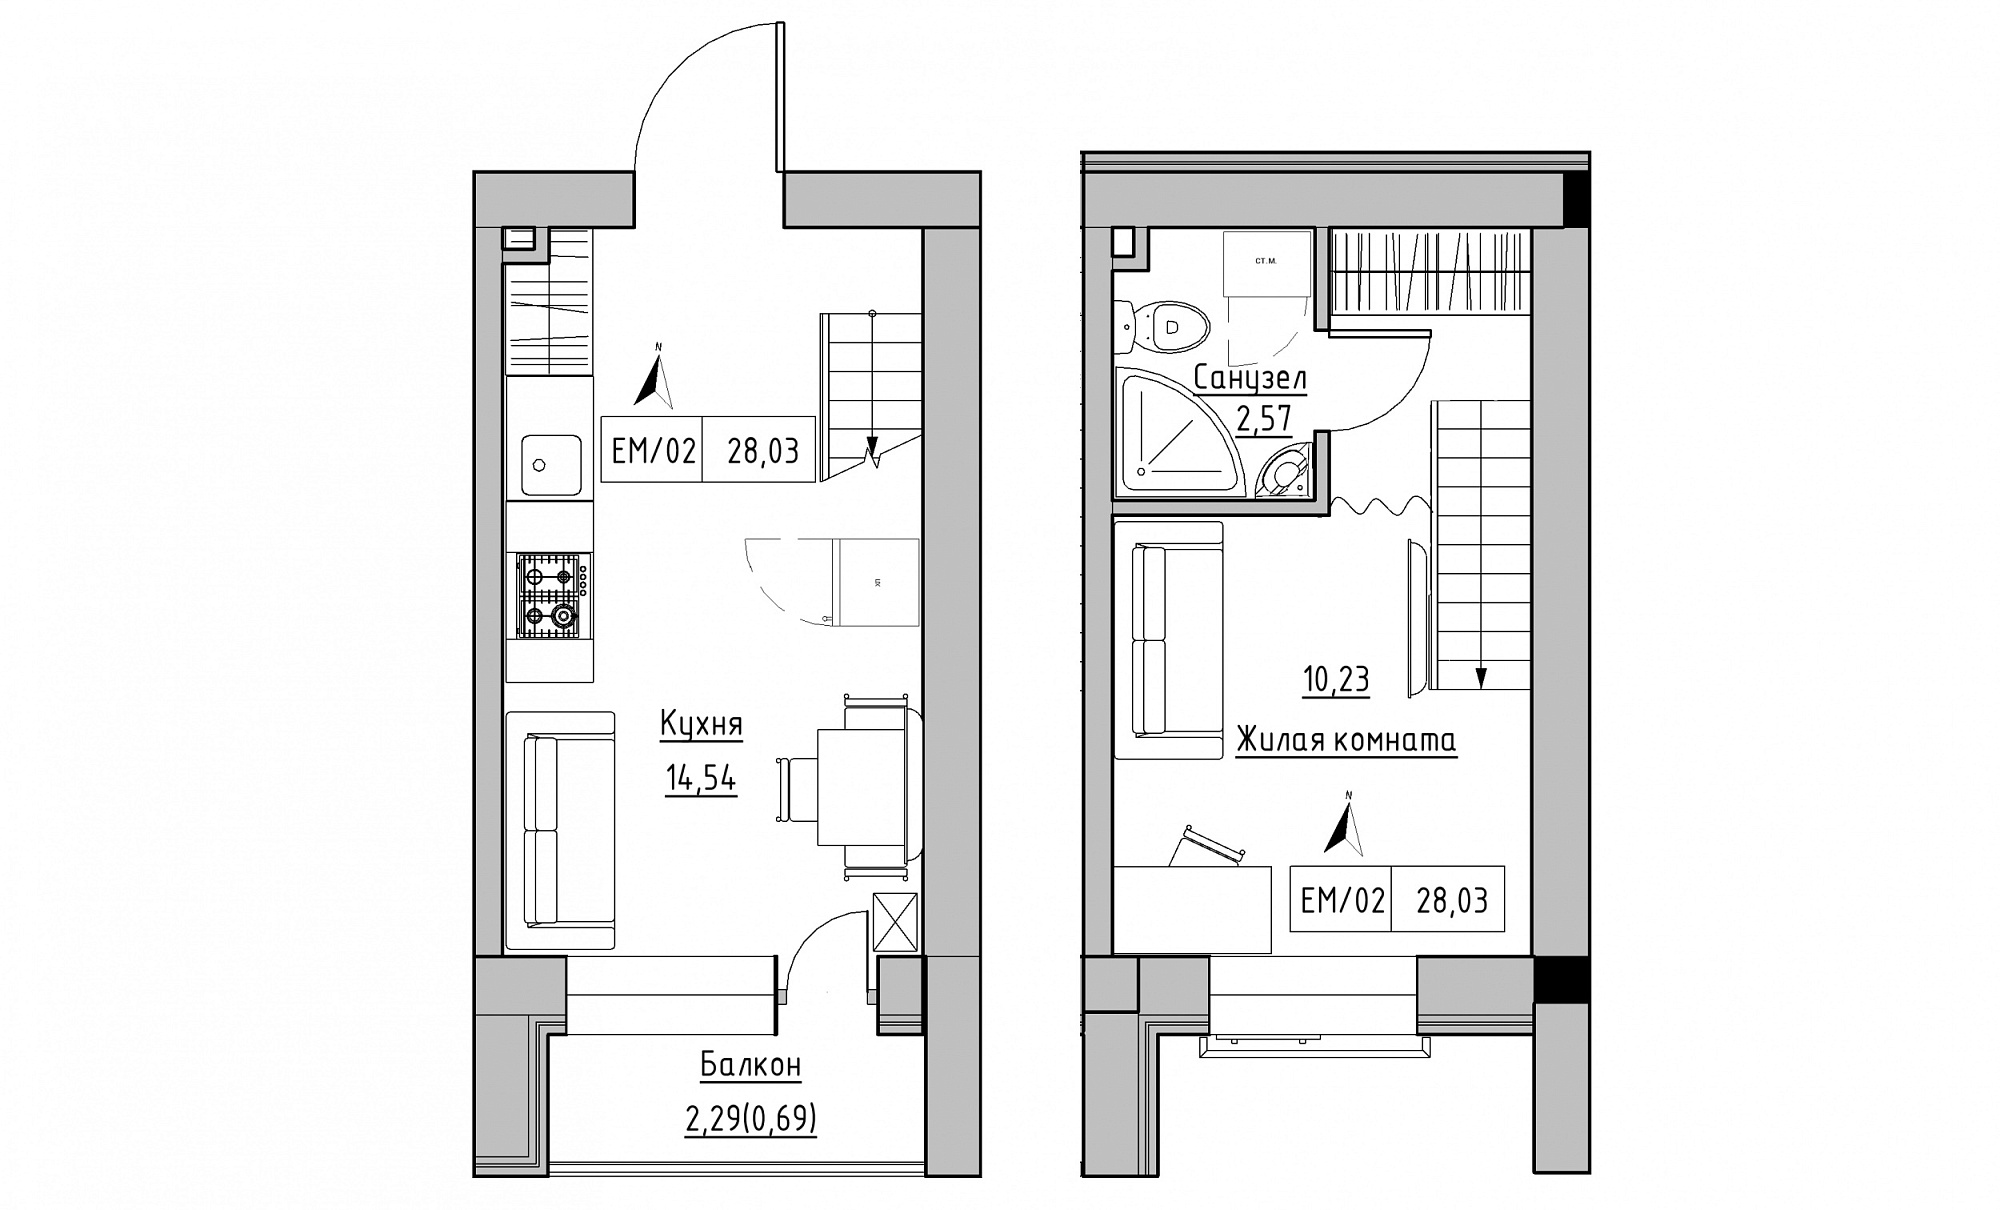 Planning 2-lvl flats area 28.03m2, KS-015-05/0009.